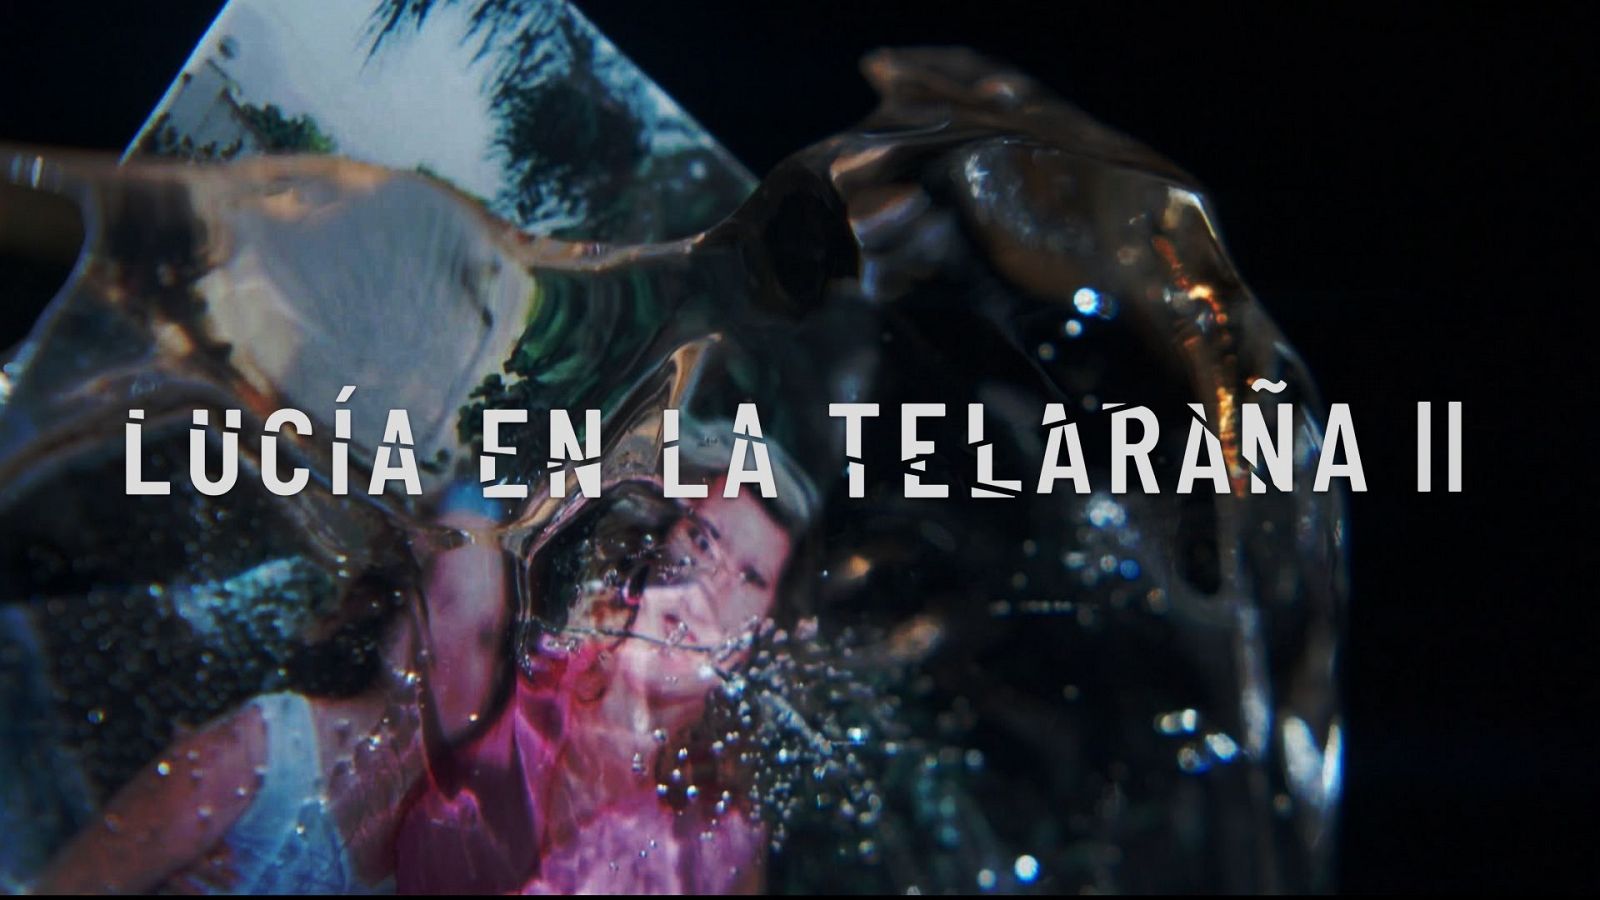 'Lucía en la telaraña II' - Tráiler temporada 2